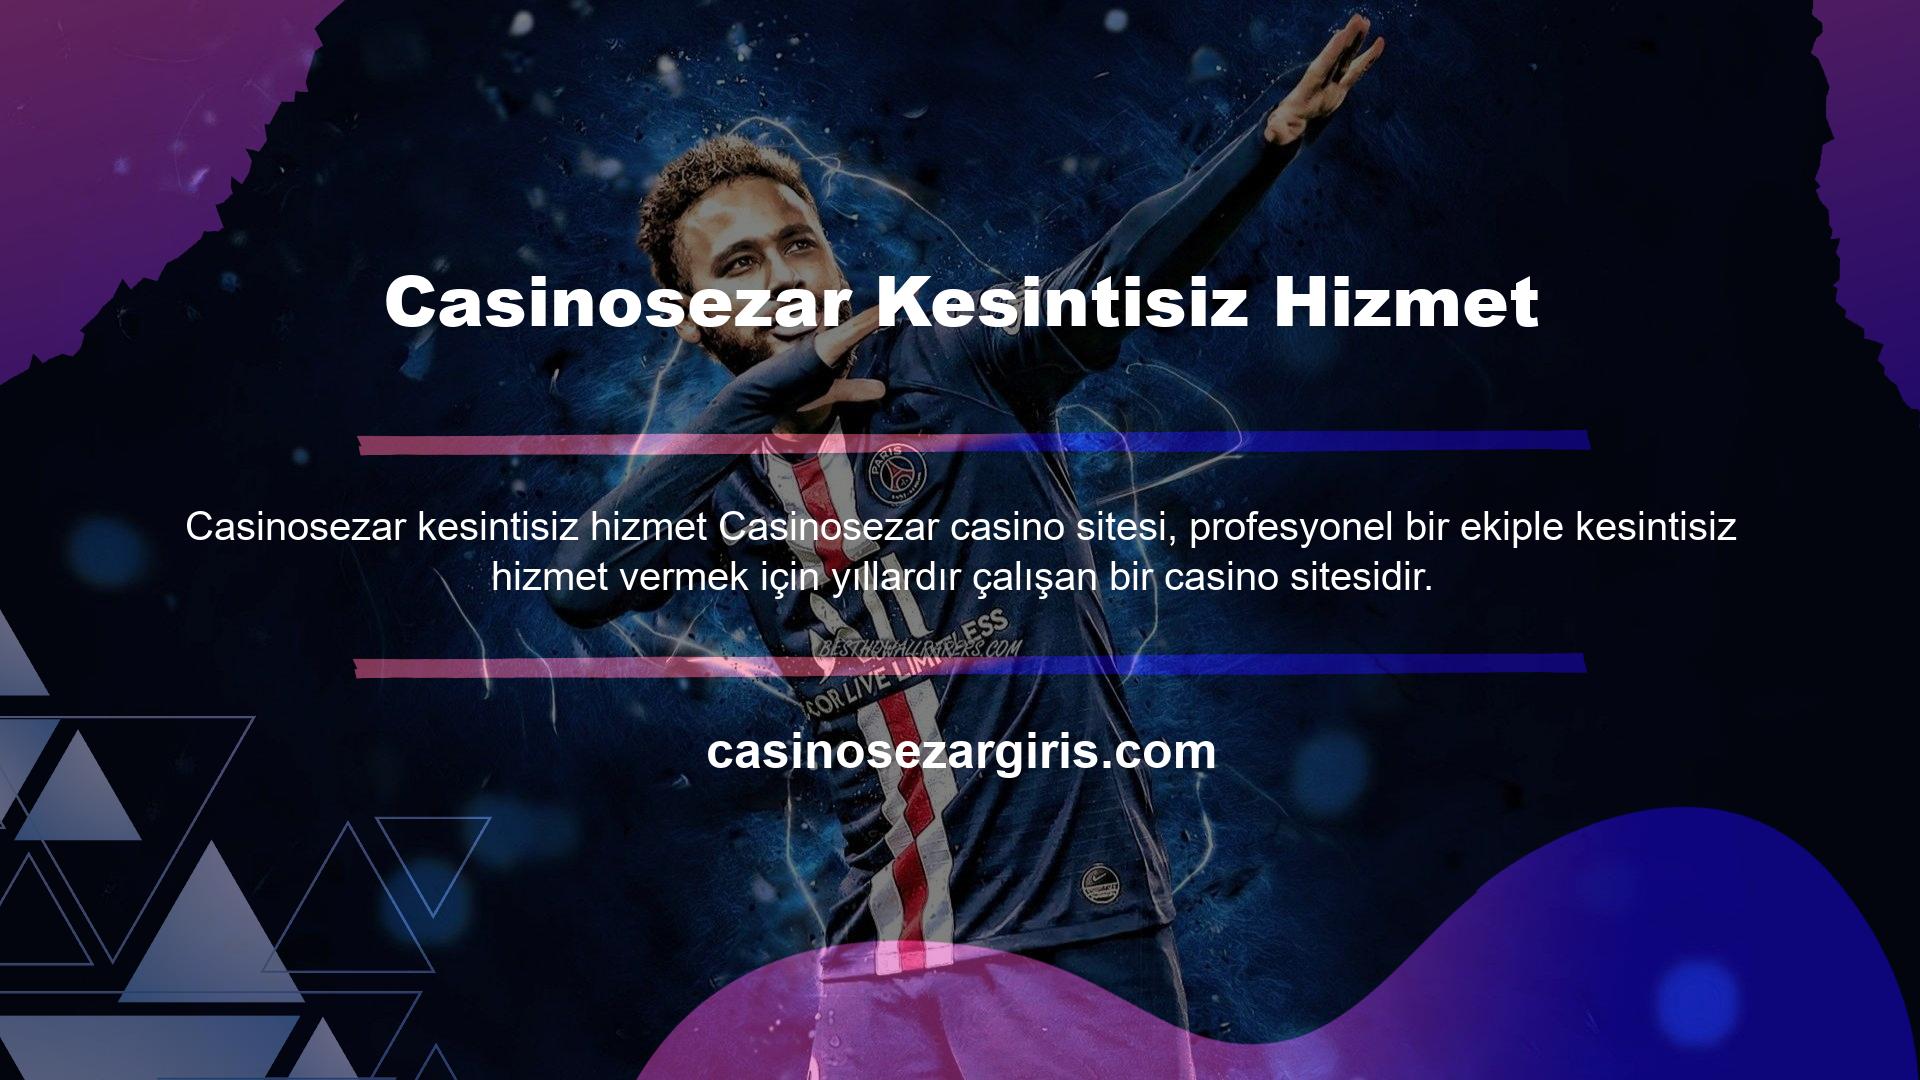 Bu tür casino sitelerine bağlanmak isteyen kullanıcılar giriş yapmakta zorlanabilirler